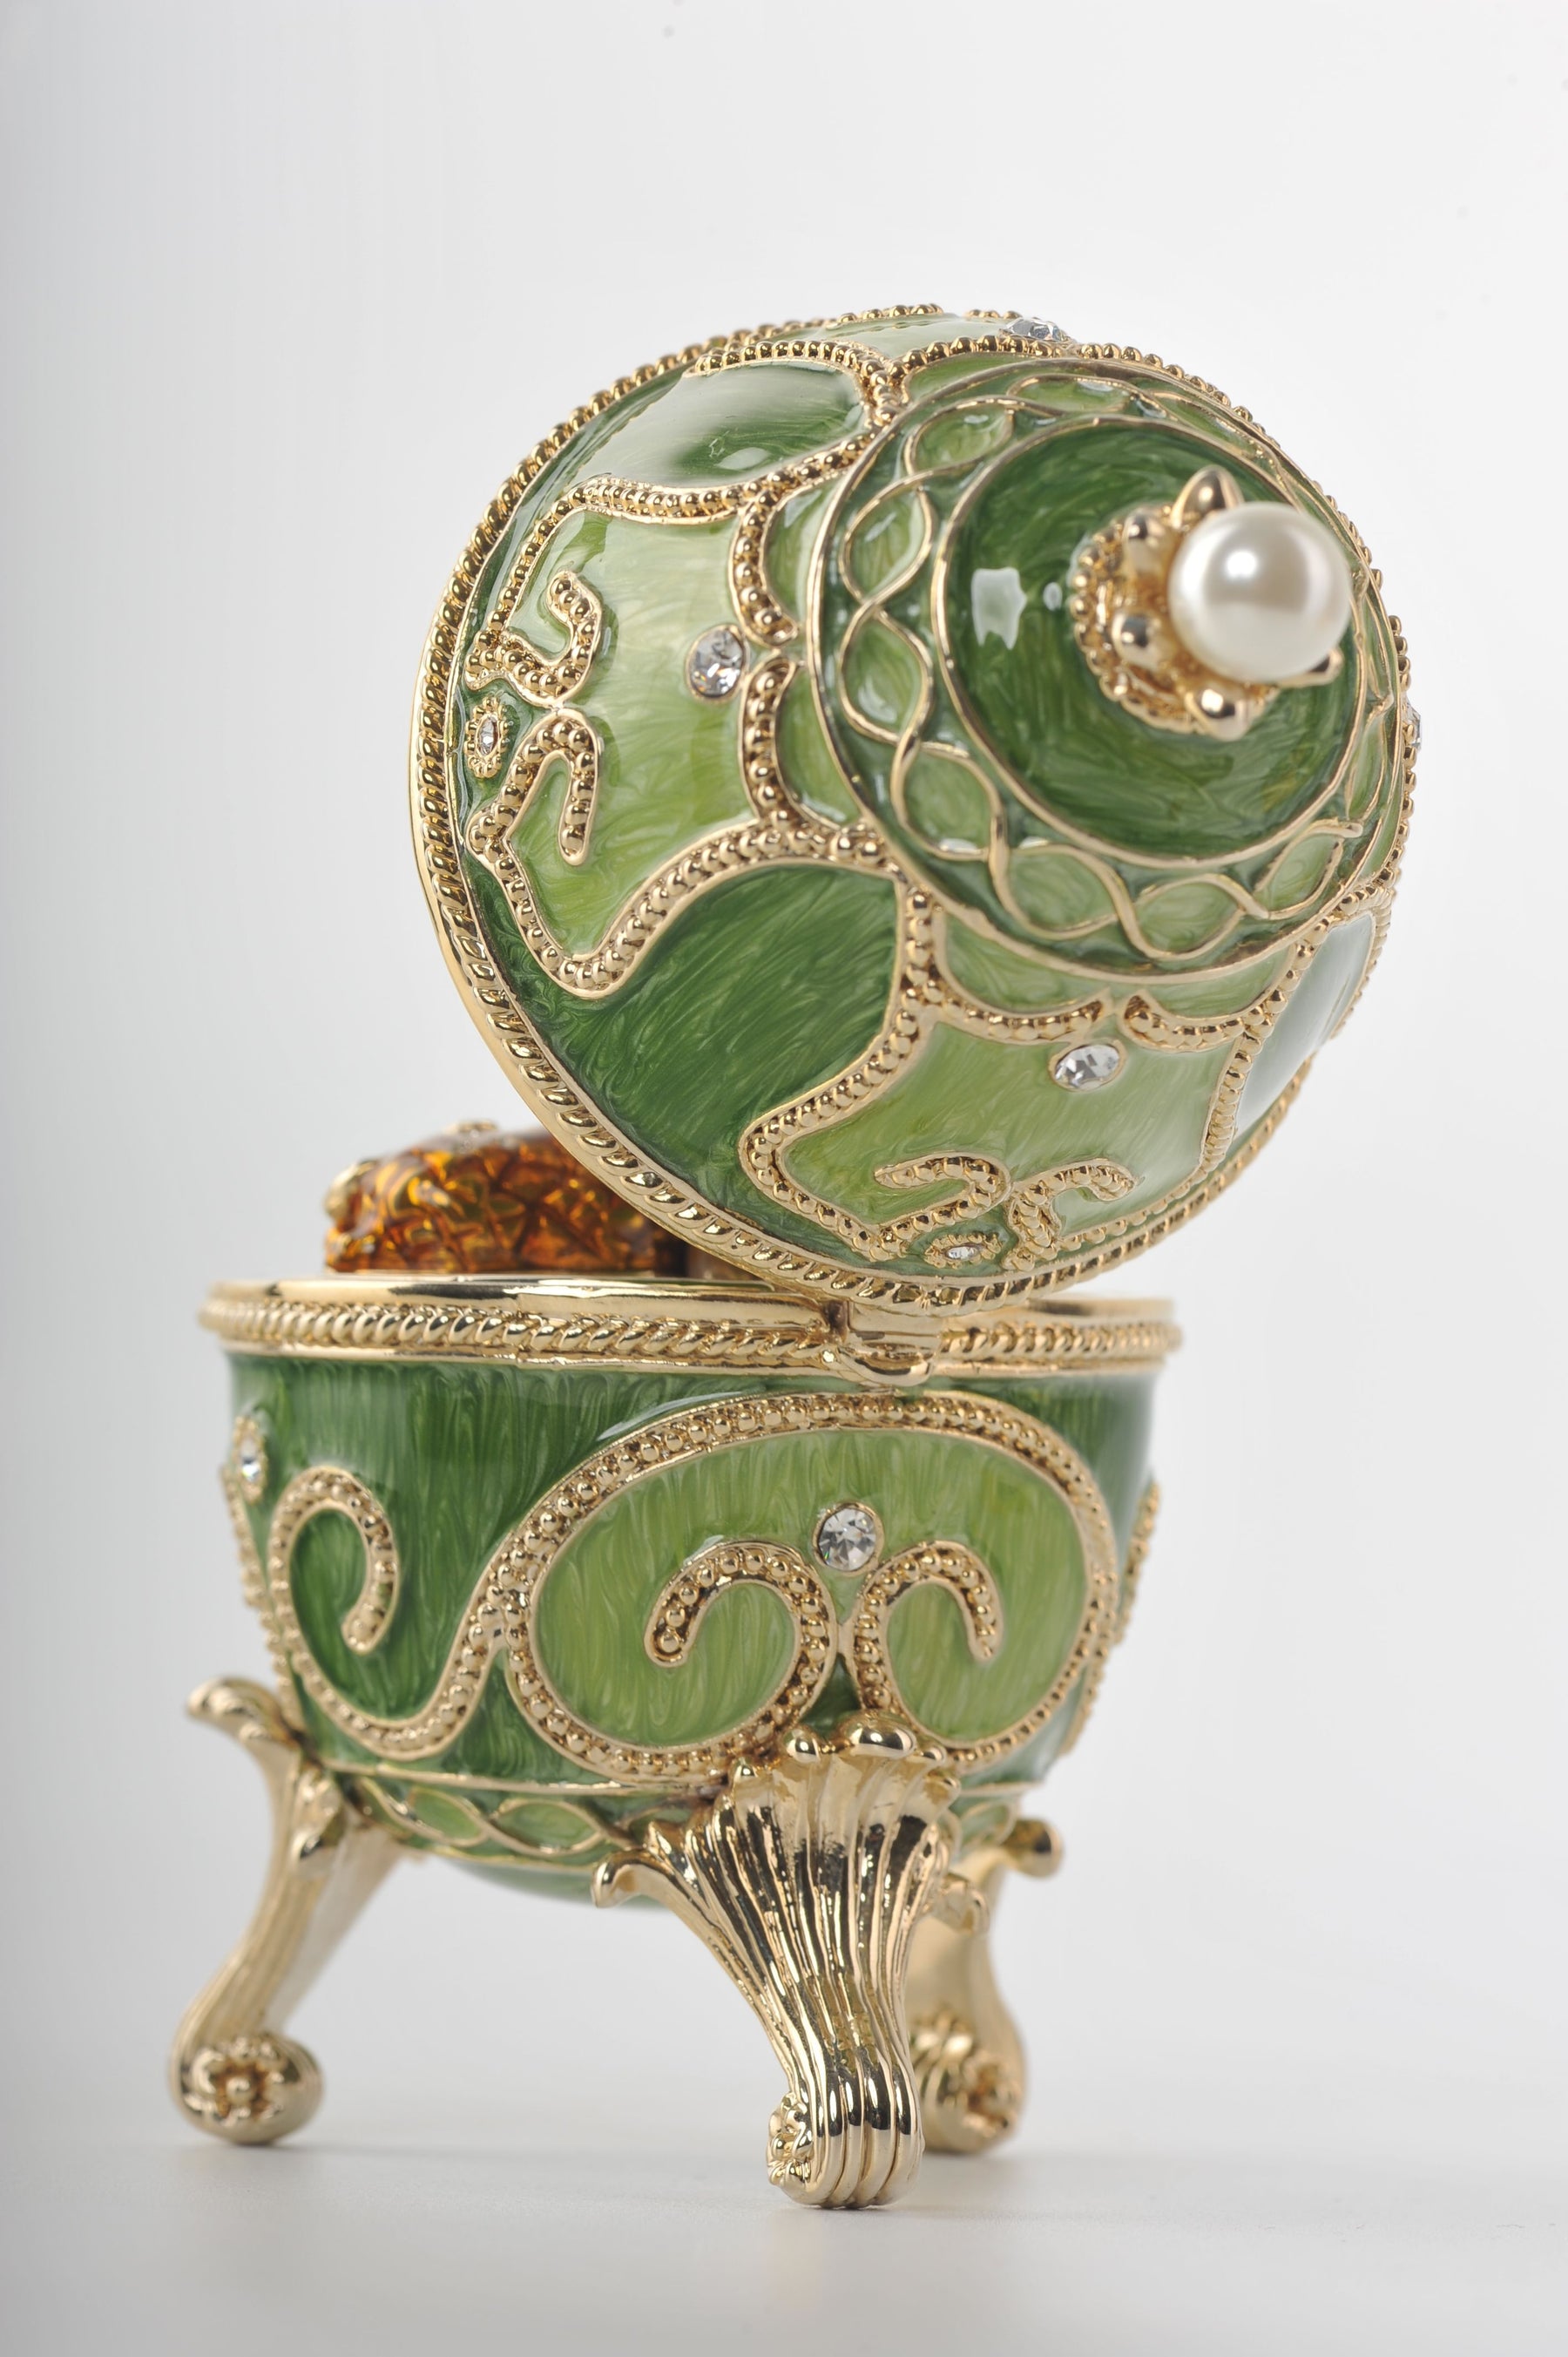 Green Faberge Egg with Animals Inside  Keren Kopal